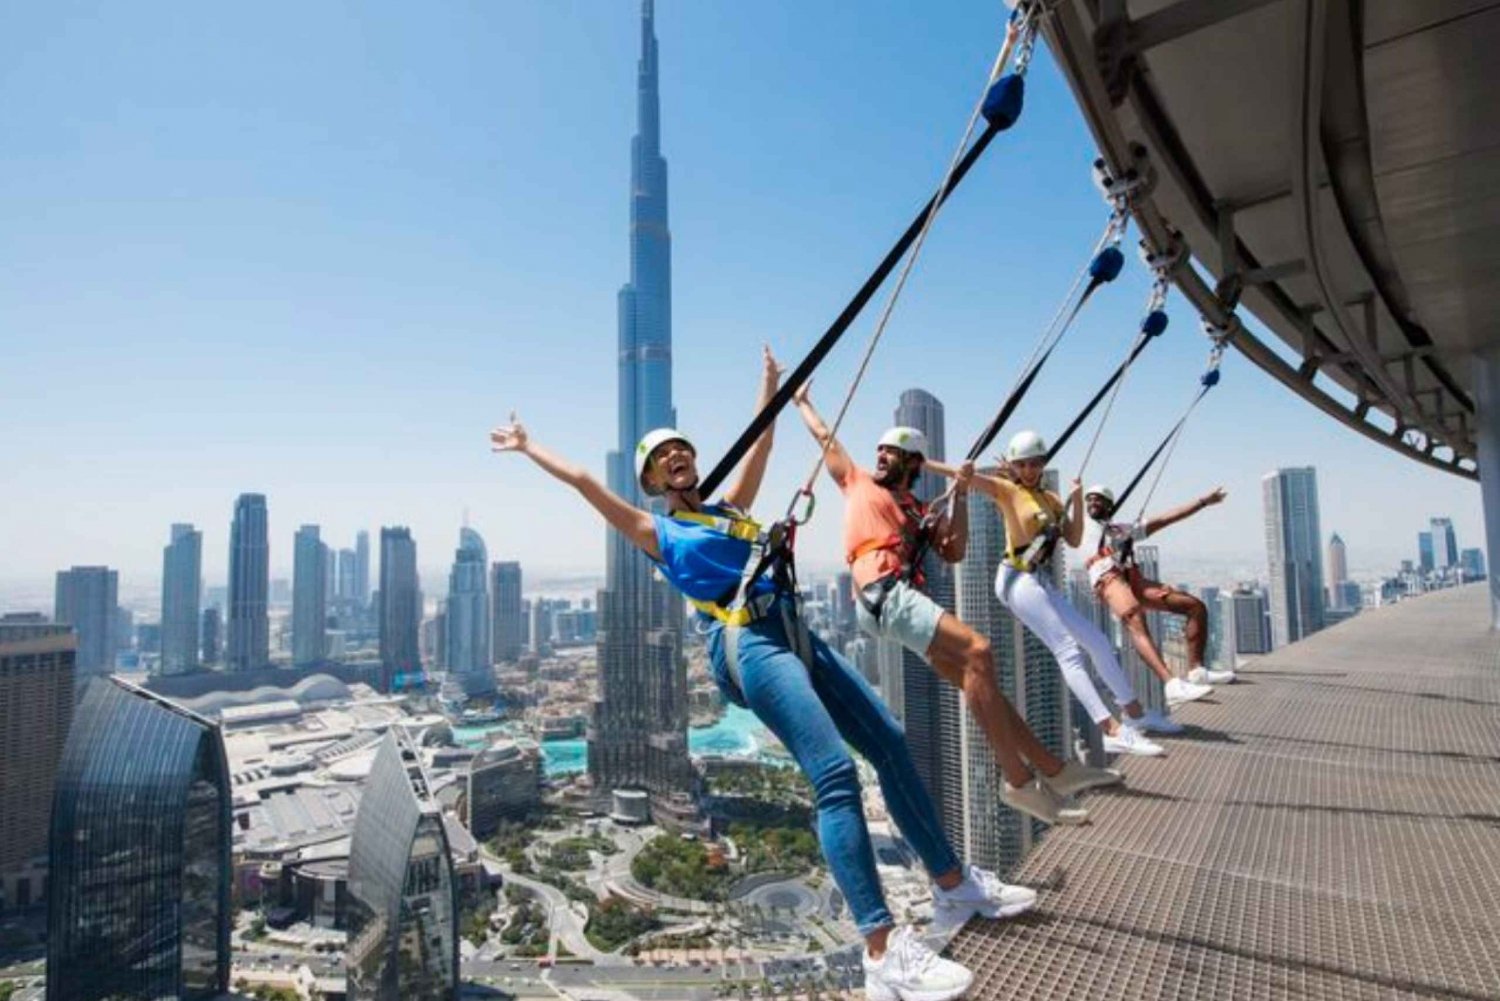 Dubaï : L'observatoire Sky Views et l'expérience Edge Walk